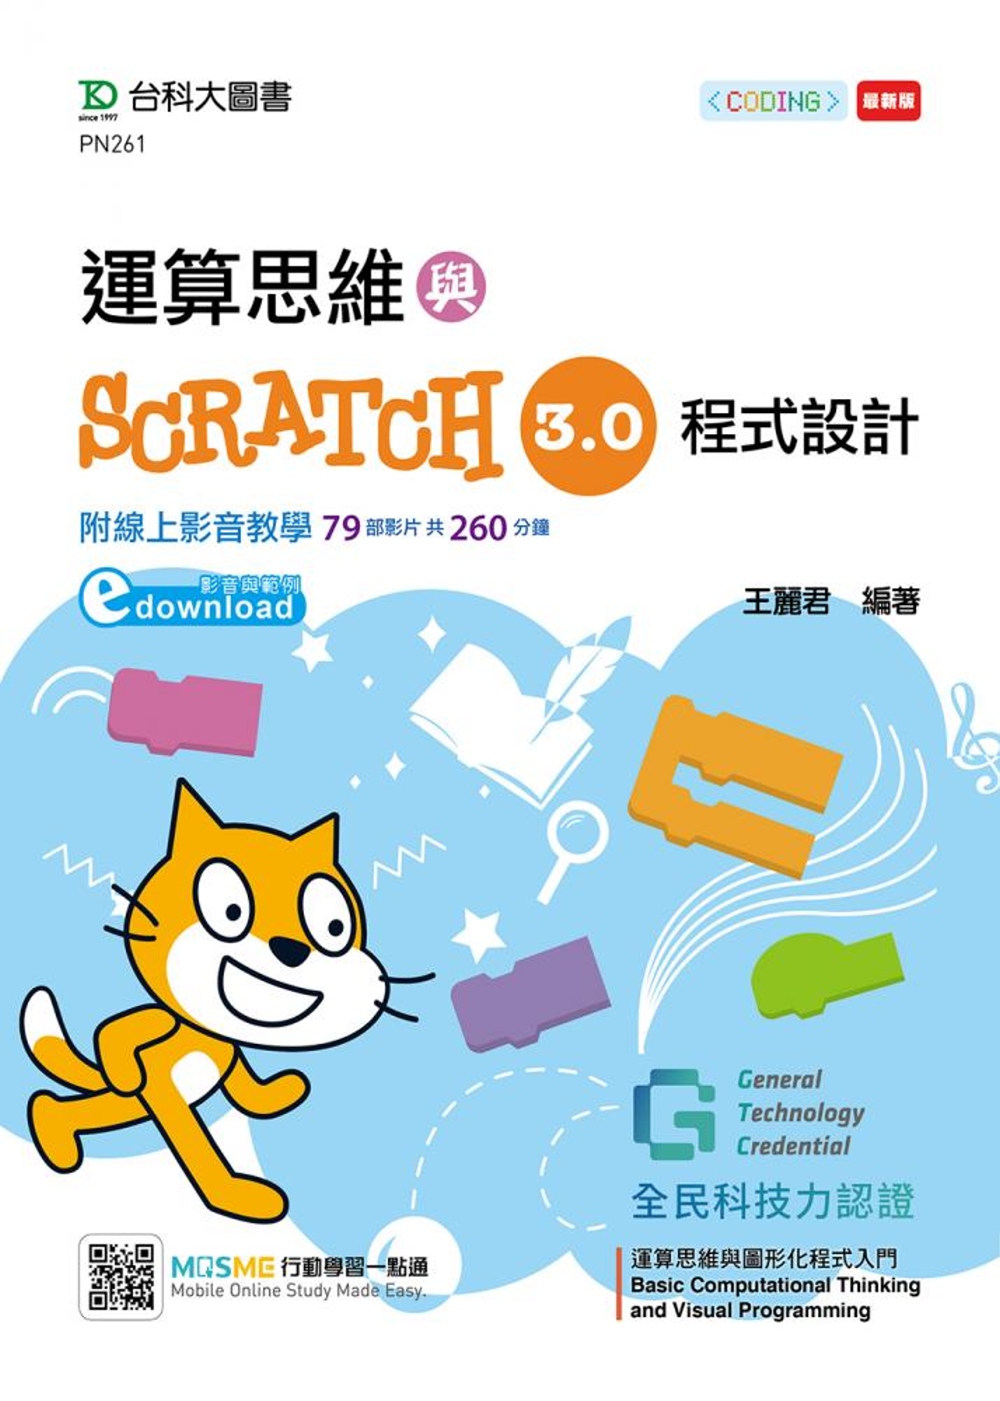 運算思維與Scratch 3.0程式設計：含GTC全民科技力認證Basic Computational Thinking and Visual Programming運算思維與圖形化程式入門 Scratch 3.0（影音與範例downloa